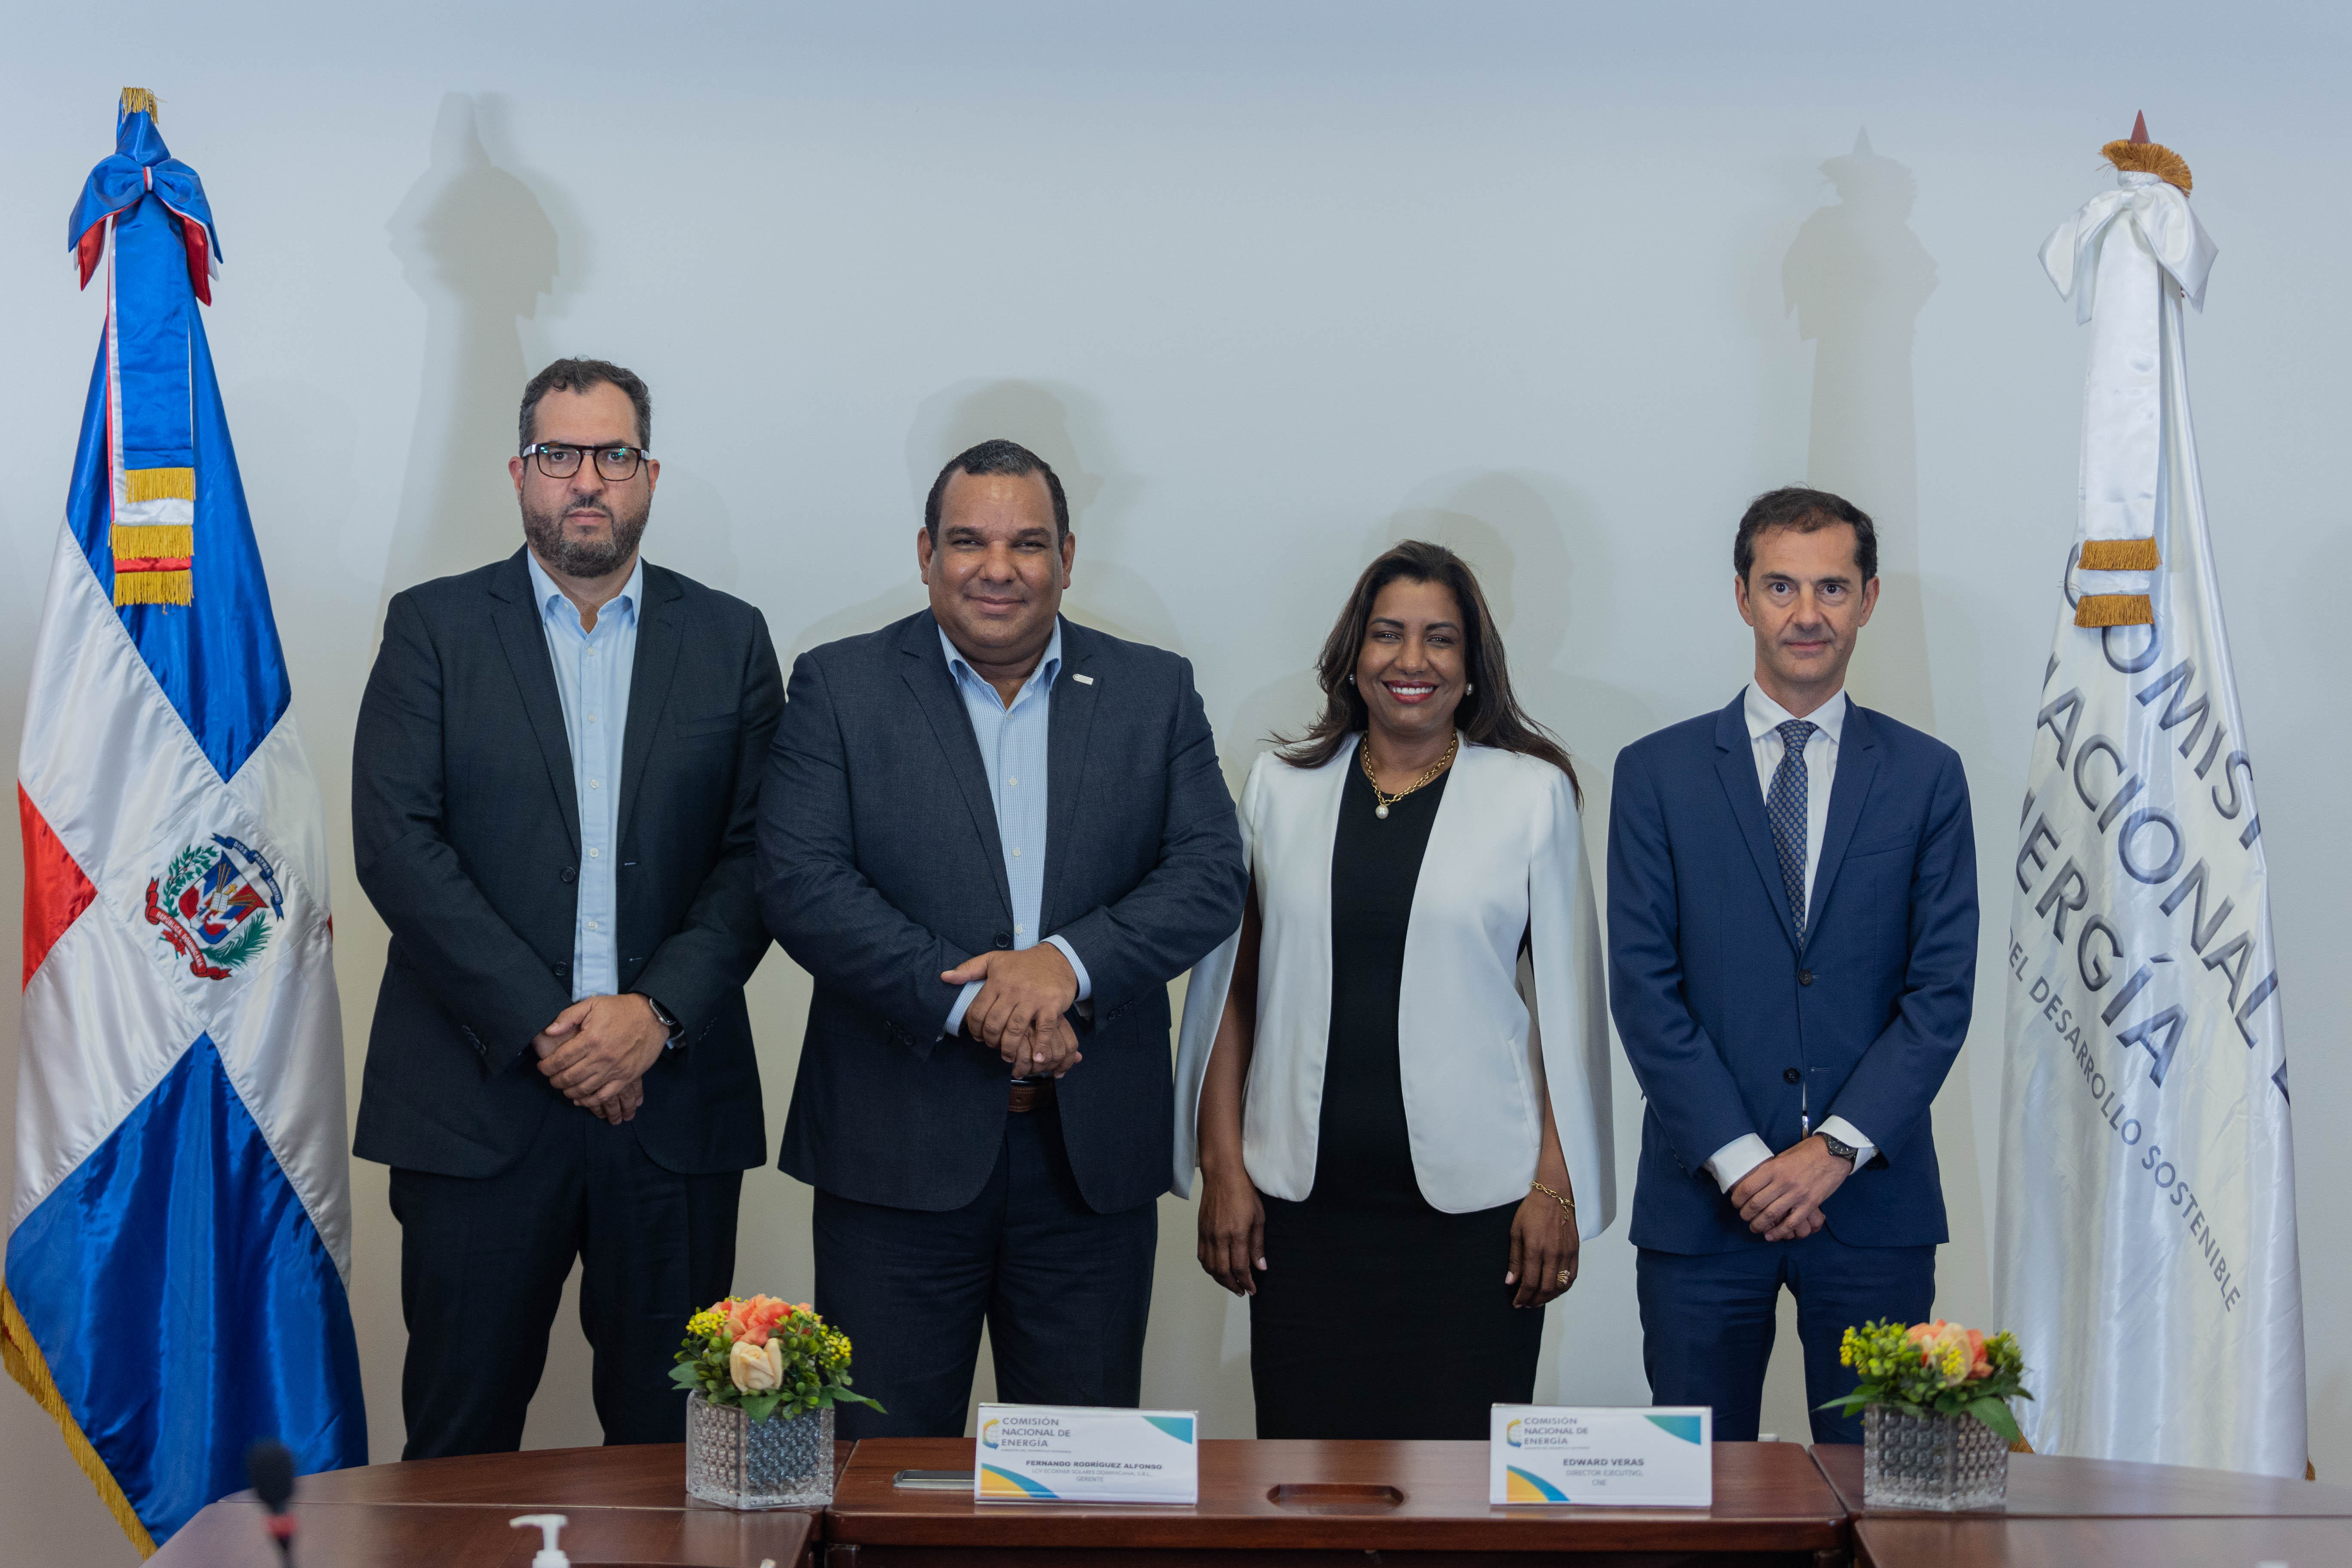 REPÚBLICA DOMINICANA: CNE otorga tres nuevas concesiones definitivas que sumarán 148 megavatios al sistema eléctrico nacional